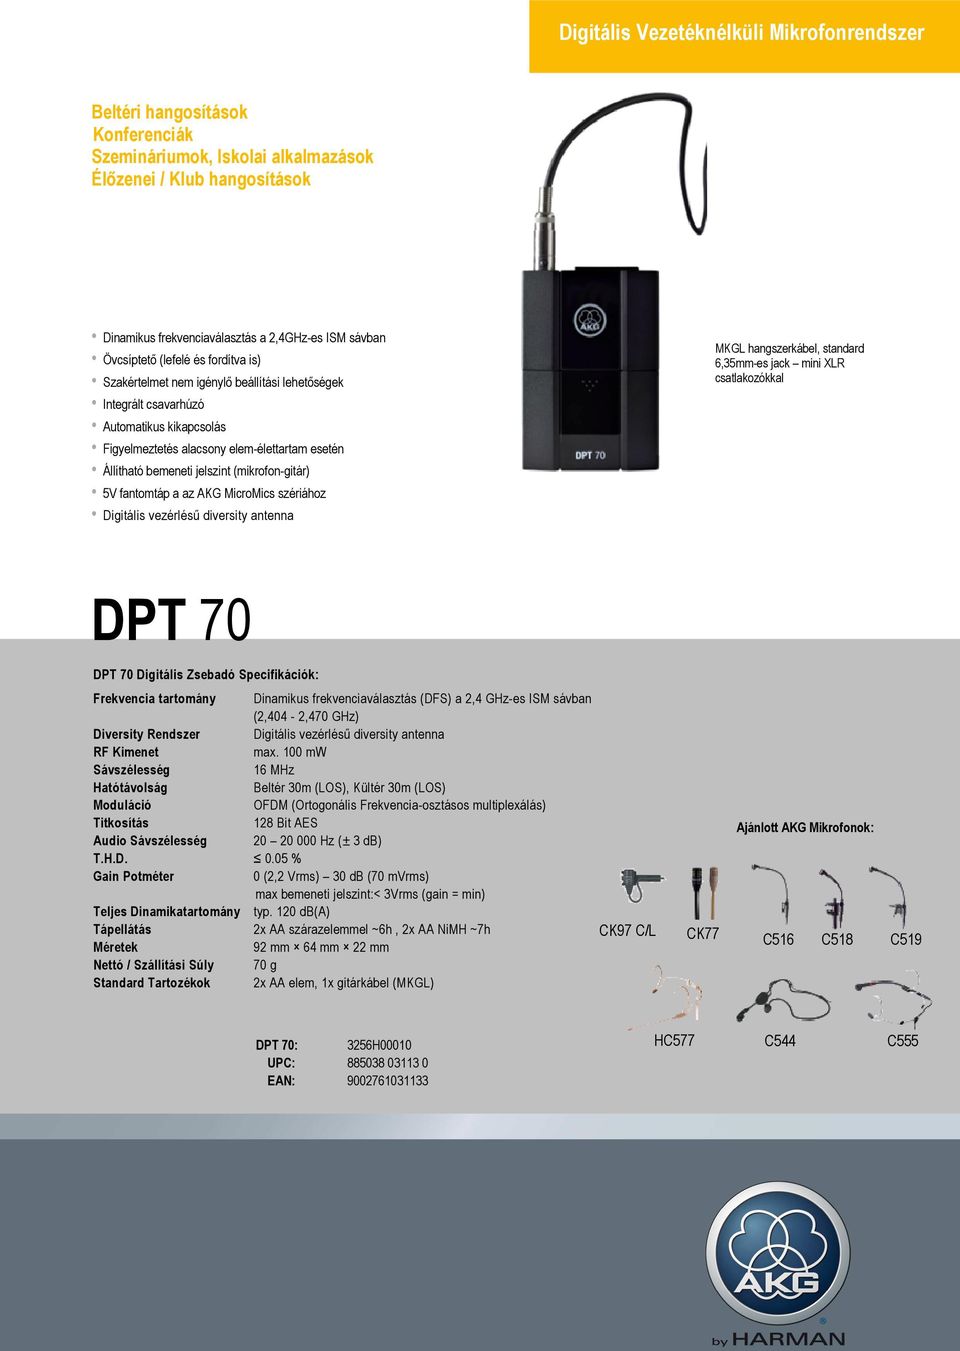 MicroMics szériához Digitális vezérlésű diversity antenna MKGL hangszerkábel, standard 6,35mm-es jack mini XLR csatlakozókkal DPT 70 DPT 70 Digitális Zsebadó Specifikációk: Frekvencia tartomány